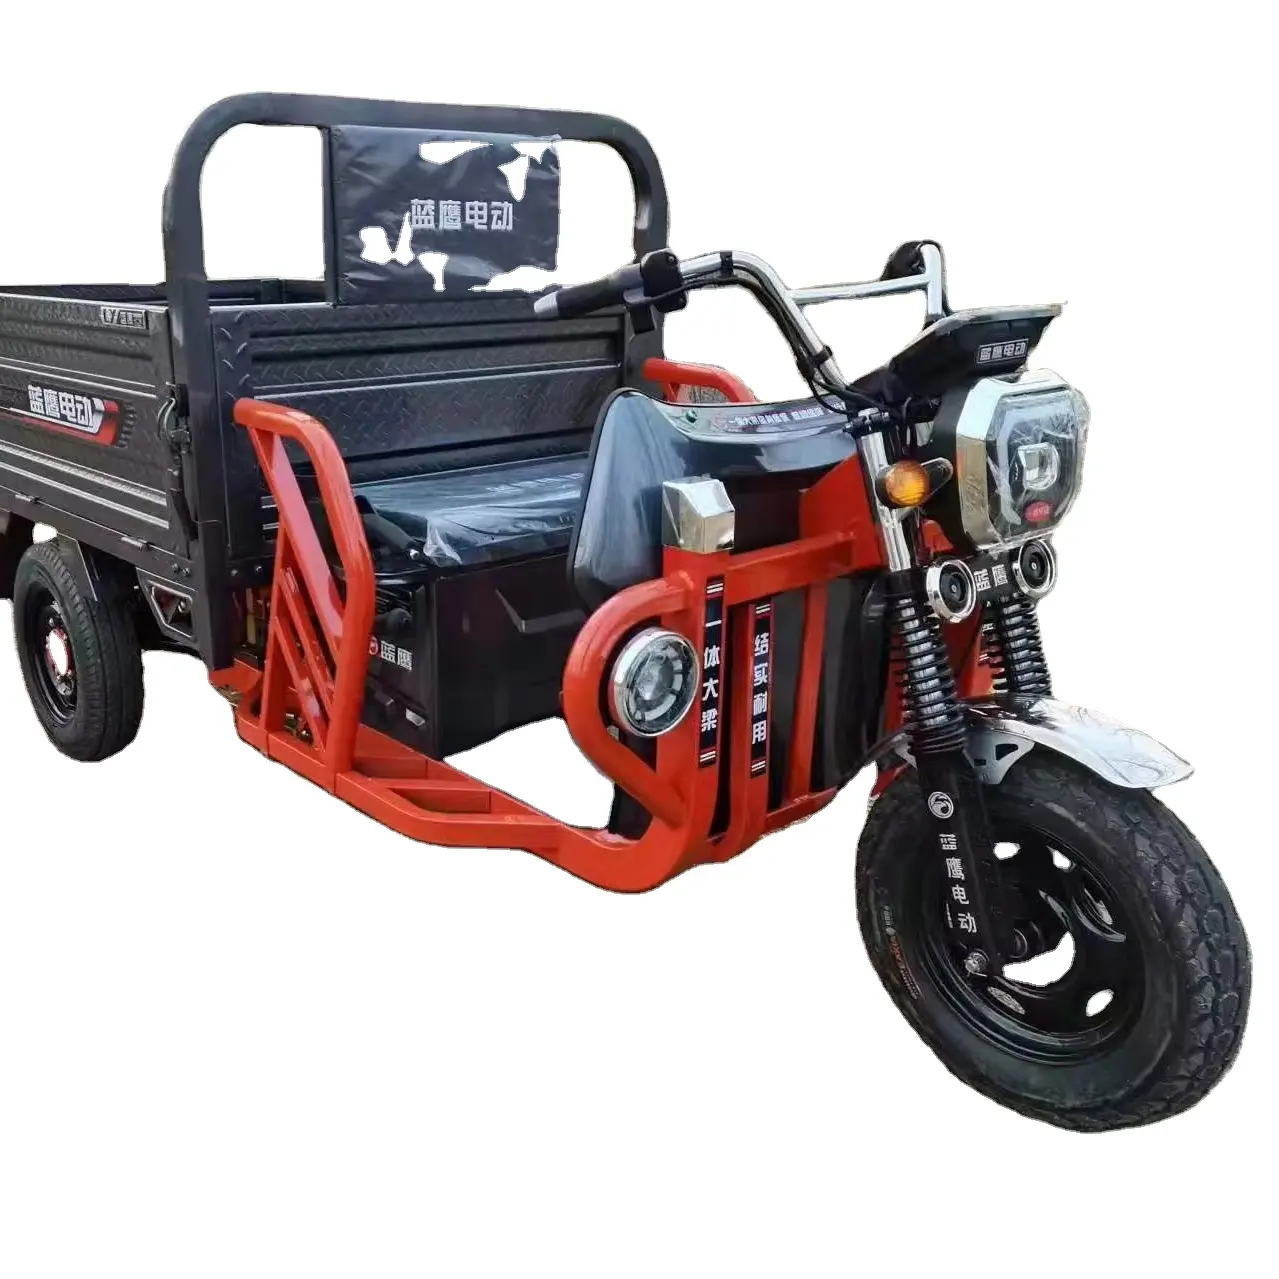 دراجة كهربائية بثلاث عجلات شائعة للغاية لحمل البضائع سكوترات كهربائية لتركيب المخازن سحب البضائع الزراعية 60 فولت